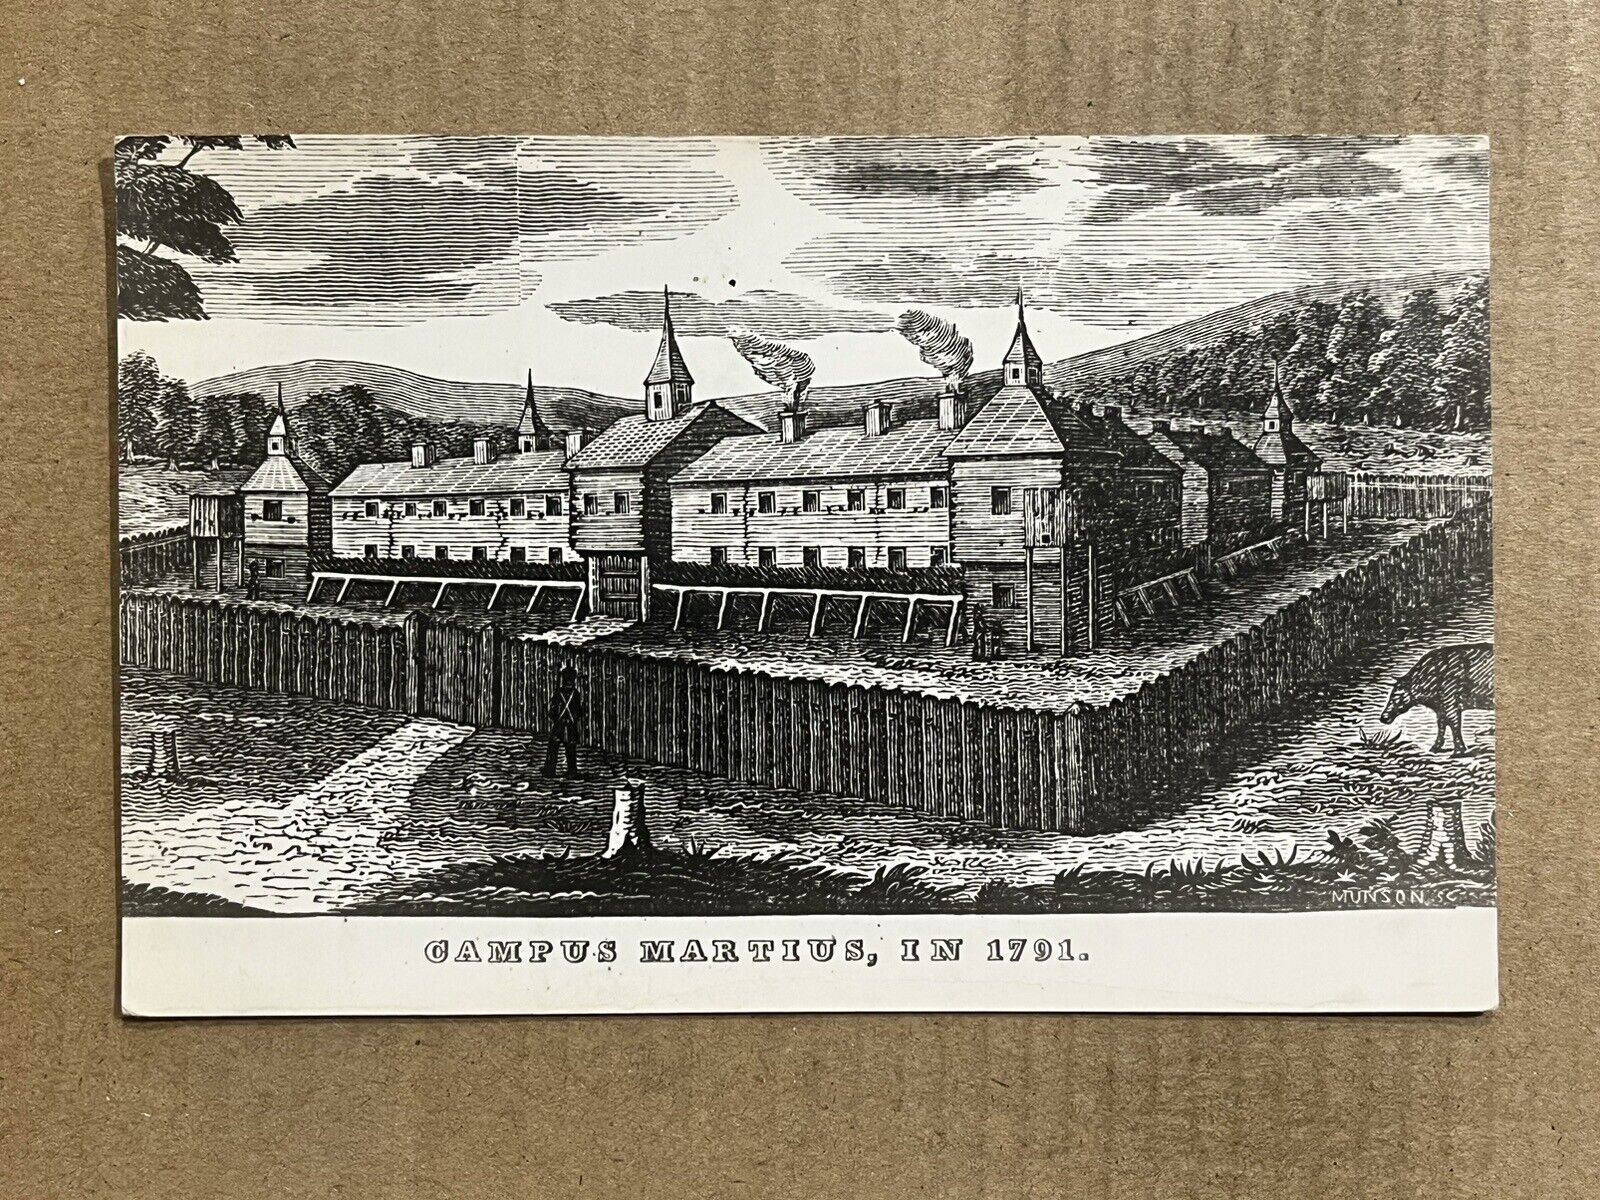 Postcard Marietta OH Ohio Campus Martius in 1791 Vintage PC